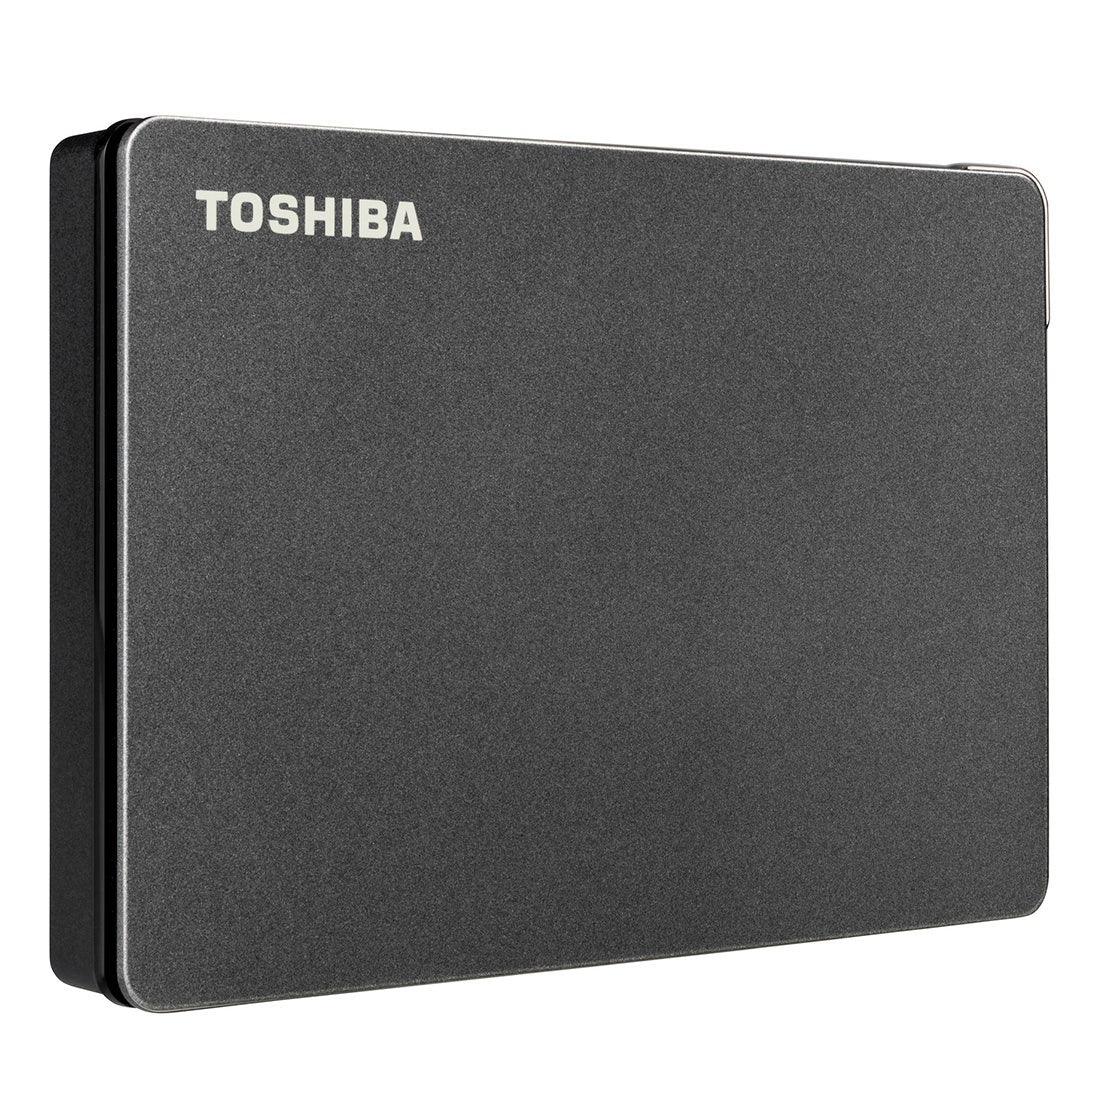 HD Externo Toshiba 2TB Canvio Gaming Preto HDTX120XK3AA I - Mega Market